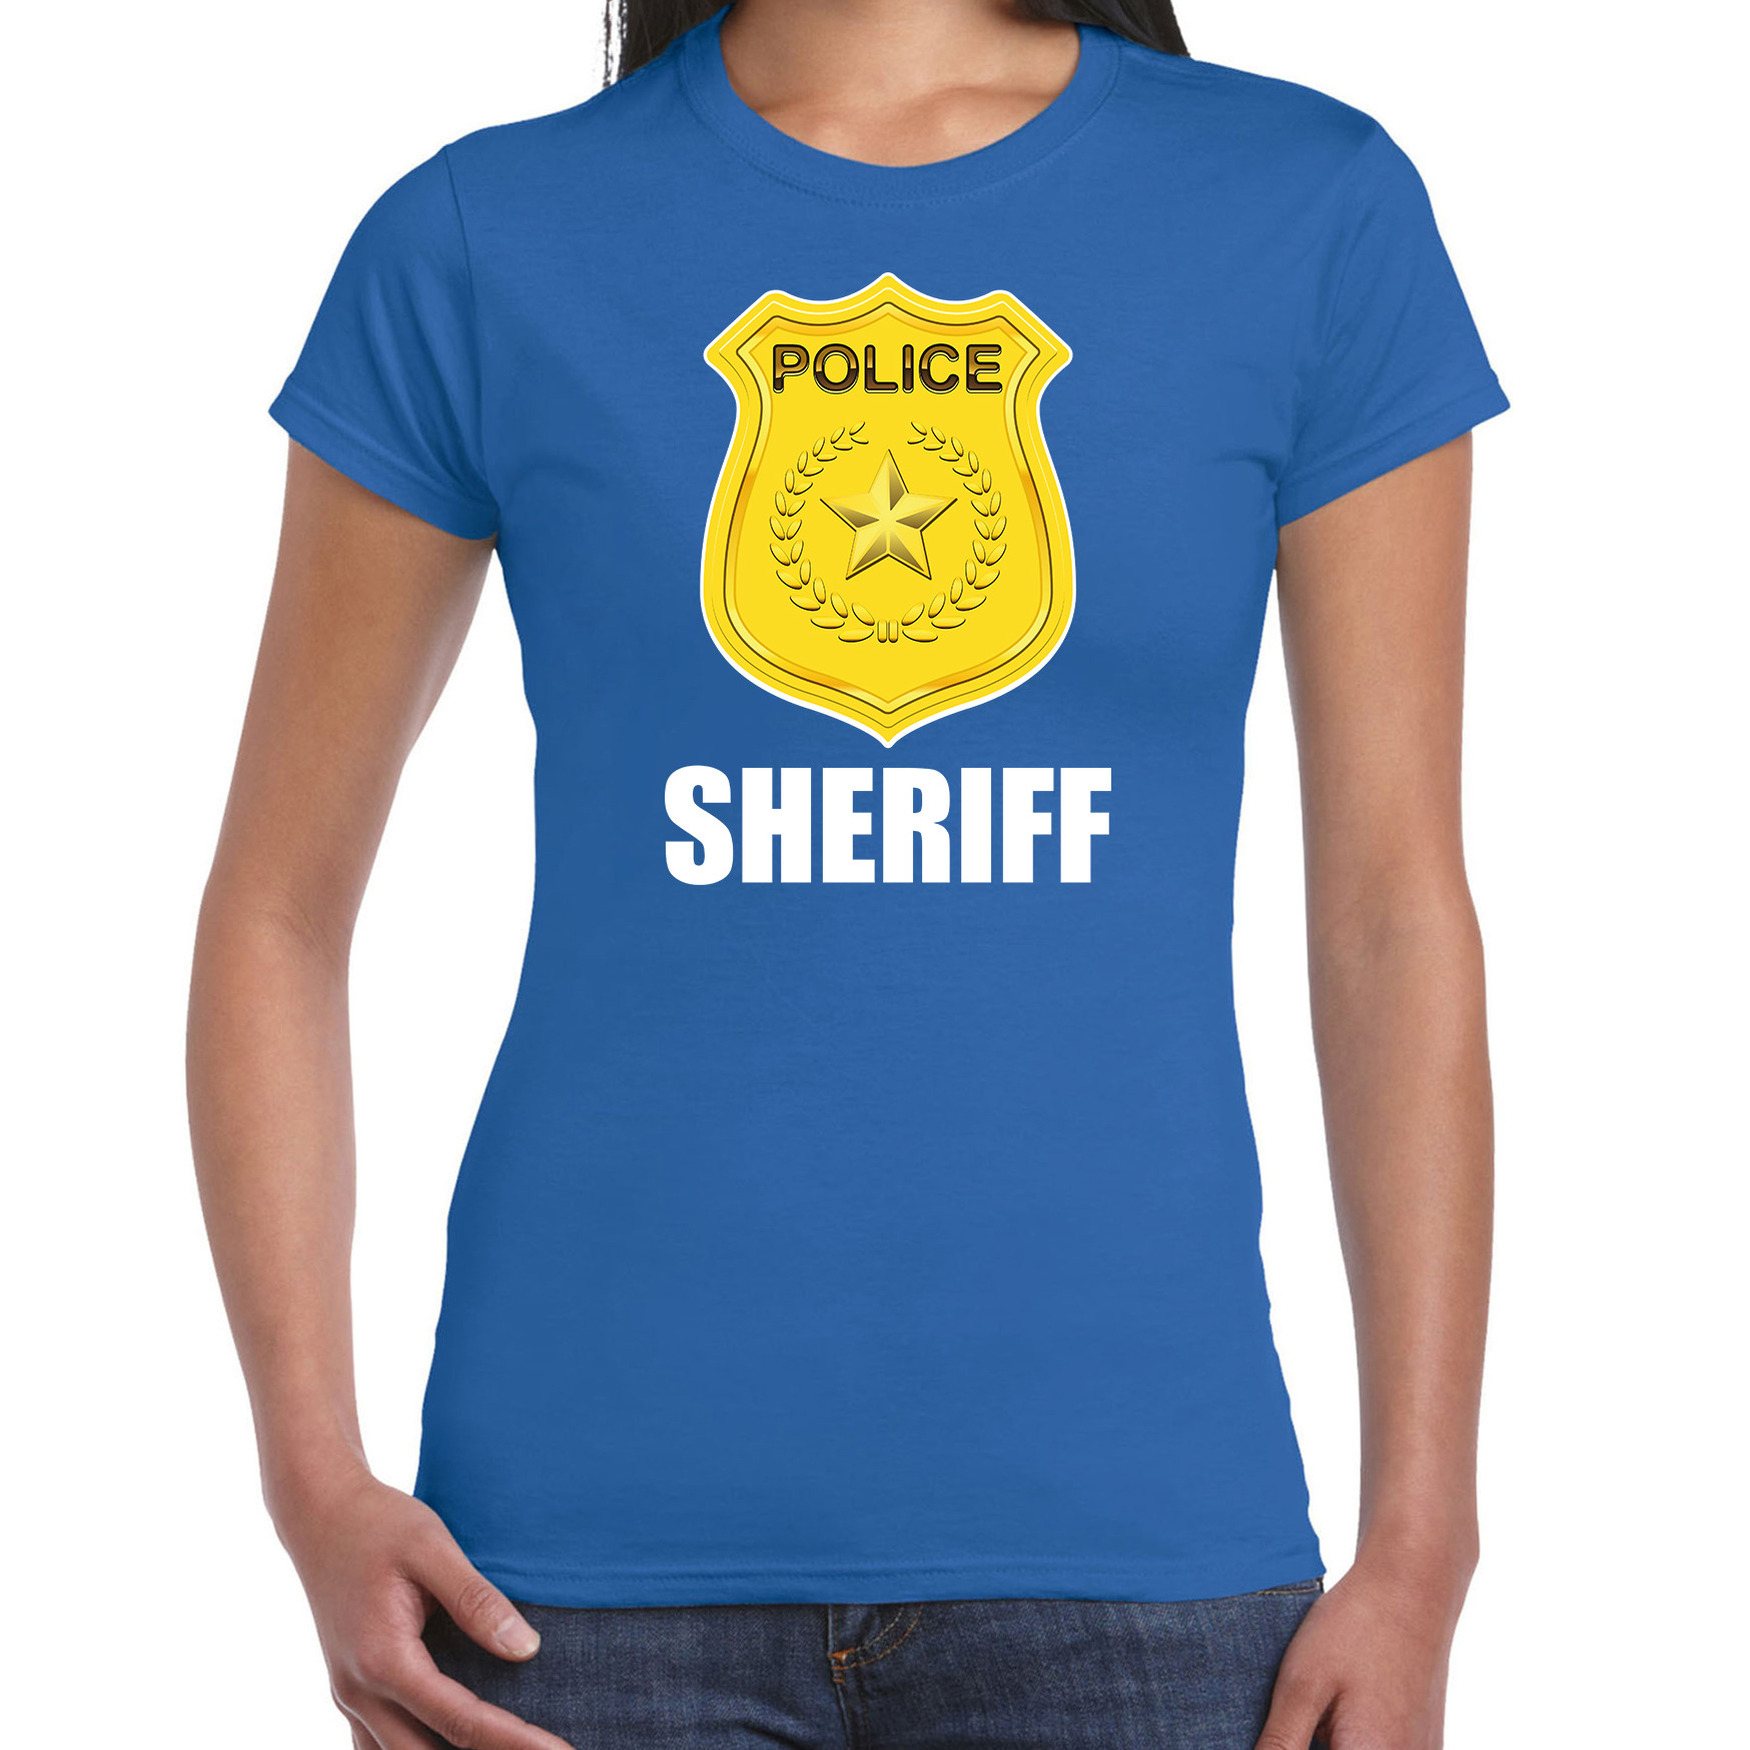 Sheriff police / politie embleem t-shirt blauw voor dames